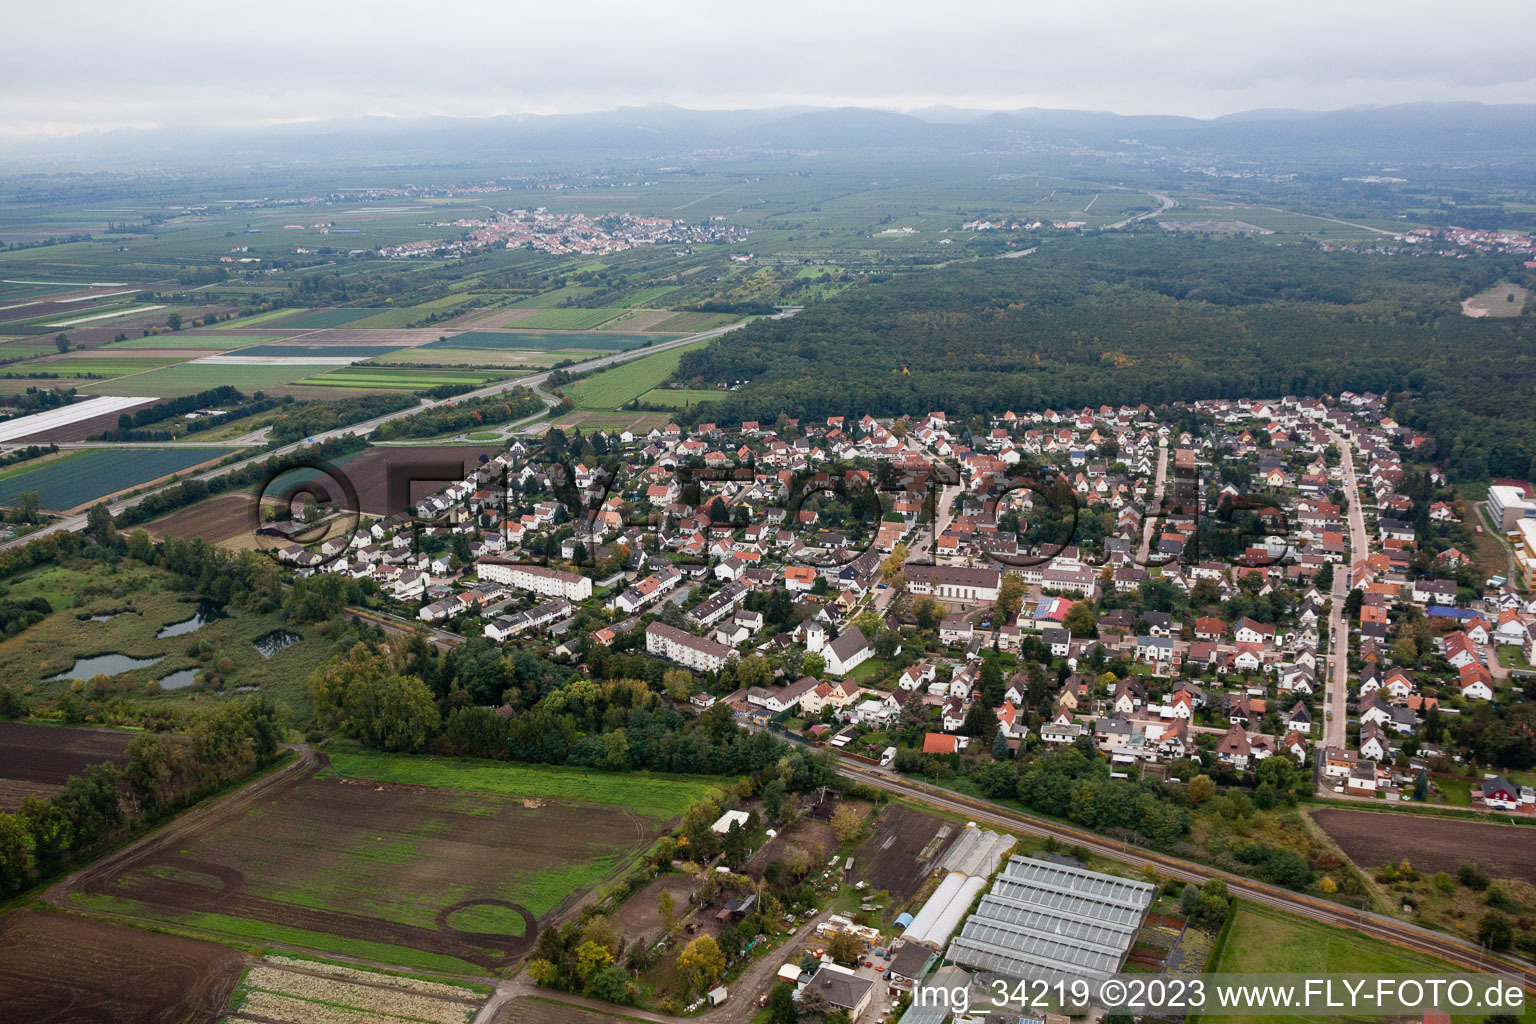 Maxdorf im Bundesland Rheinland-Pfalz, Deutschland aus der Luft betrachtet